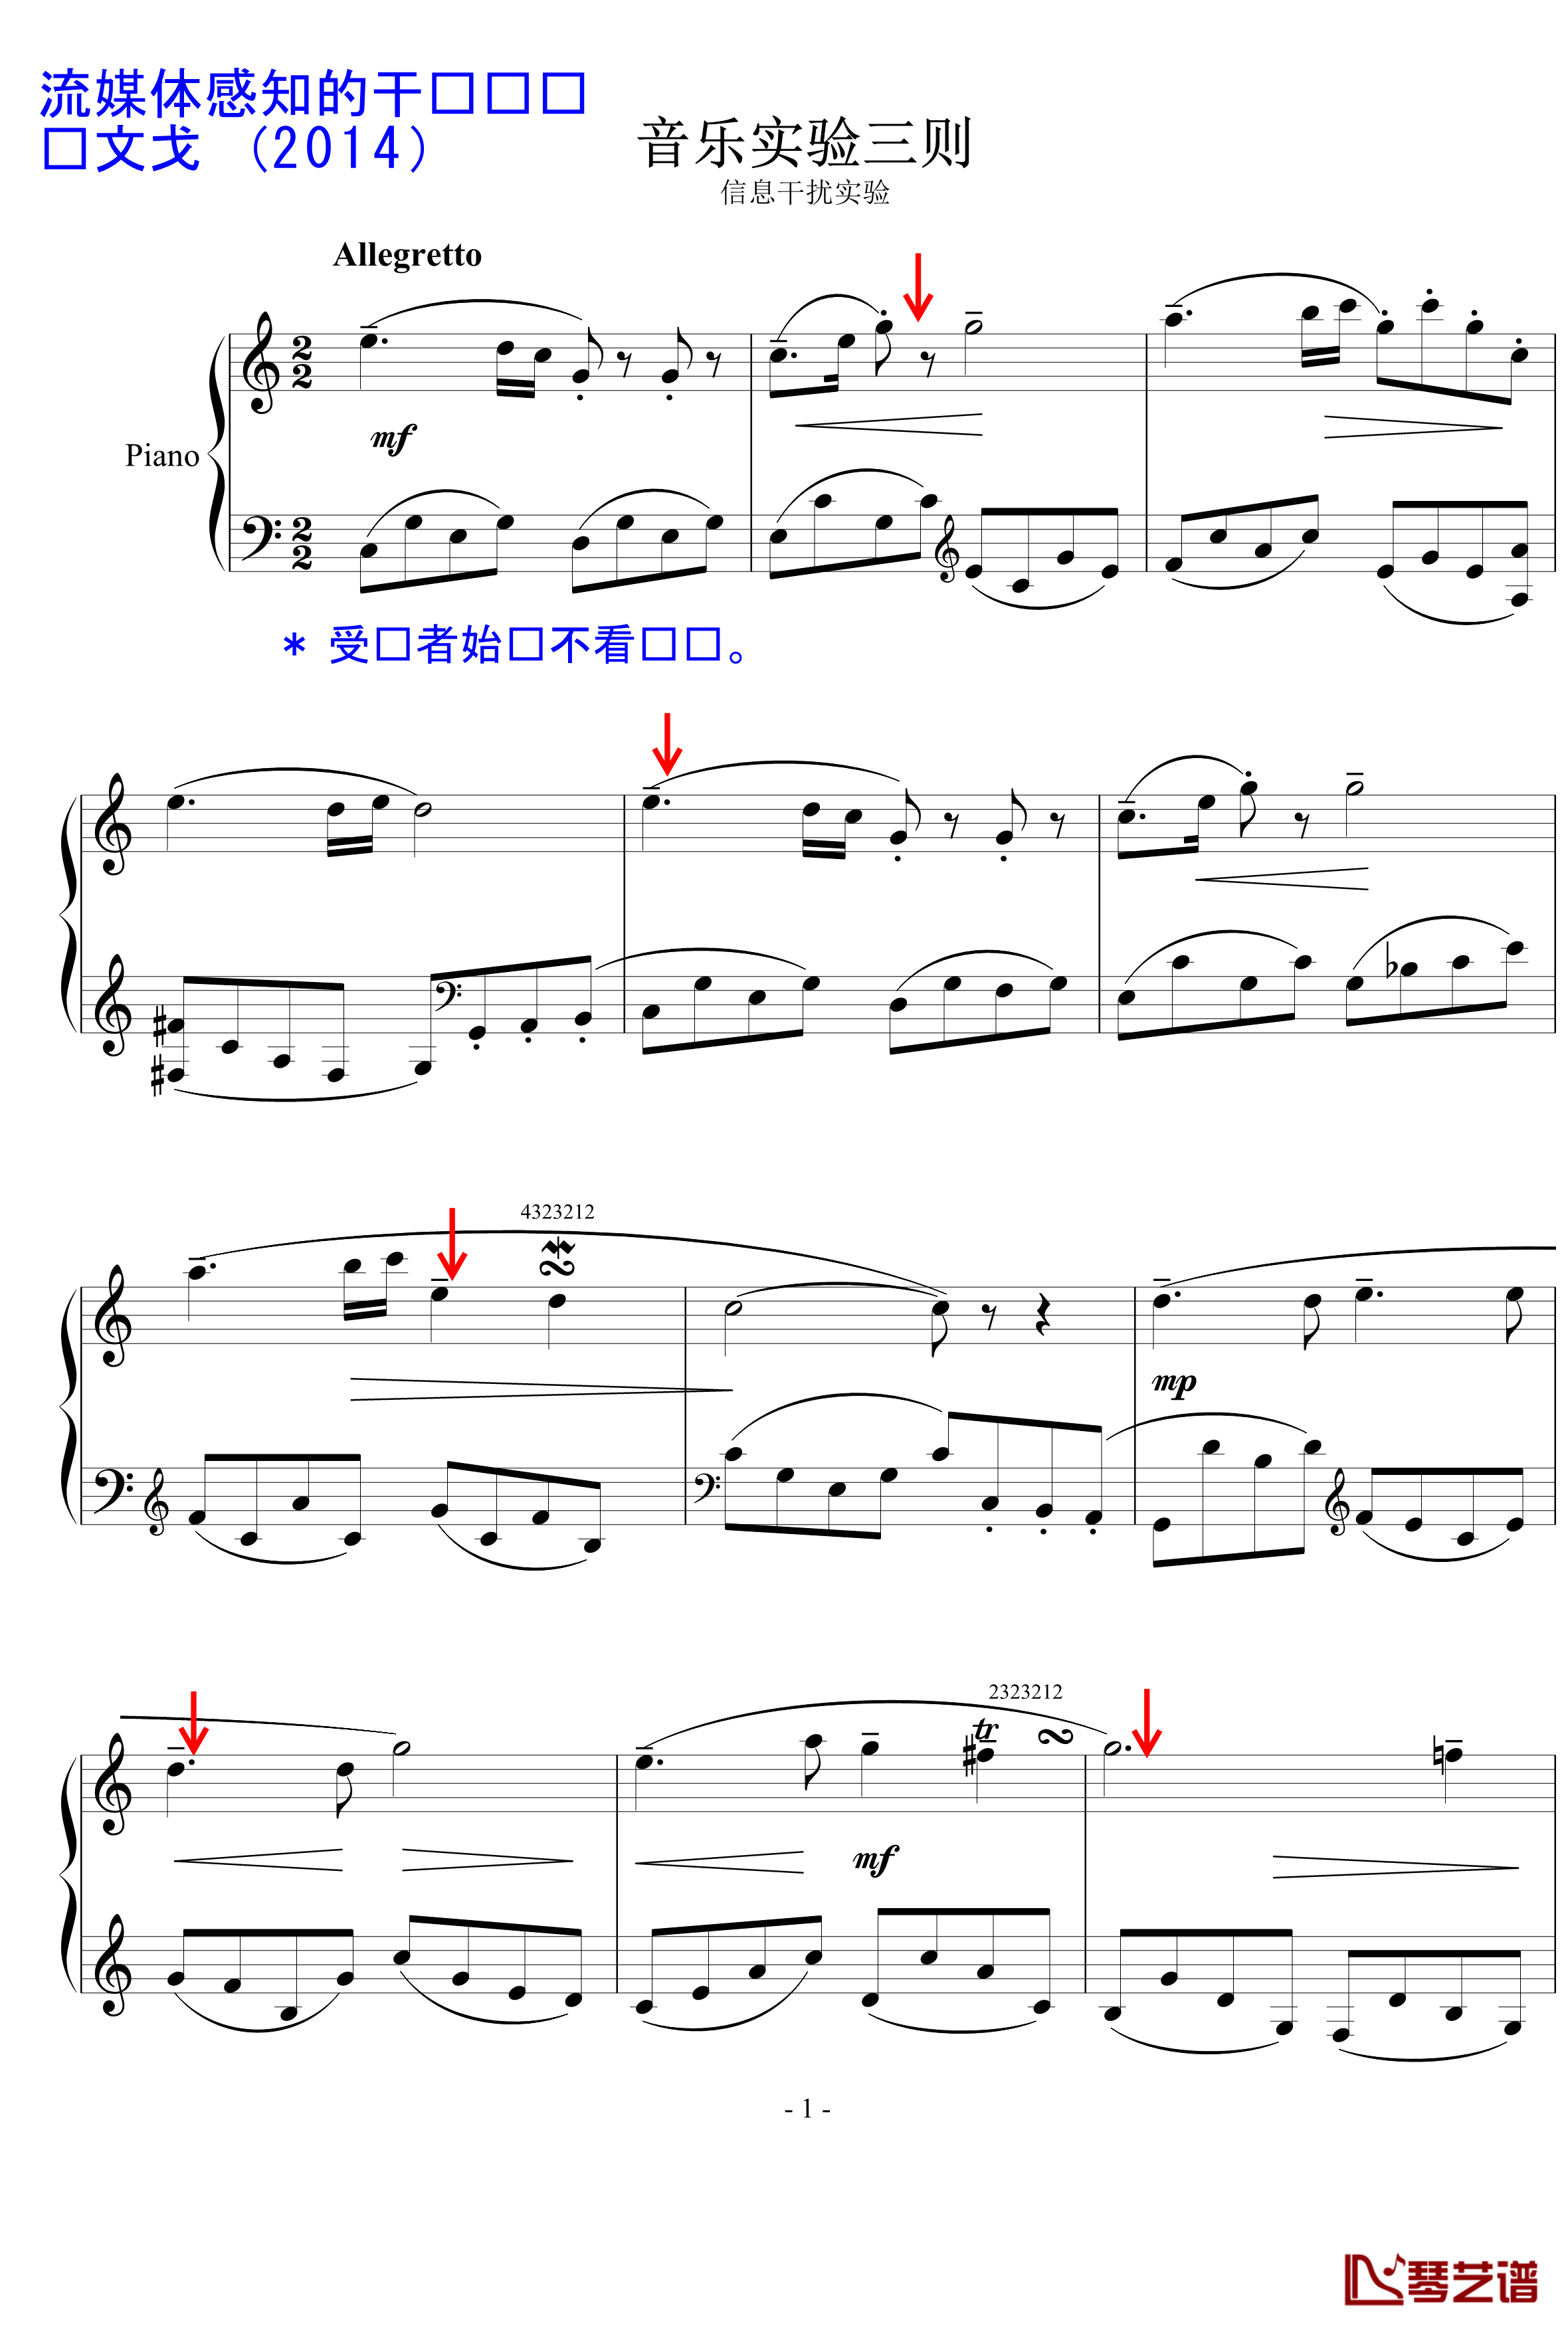 信息干扰实验钢琴谱-陈文戈1